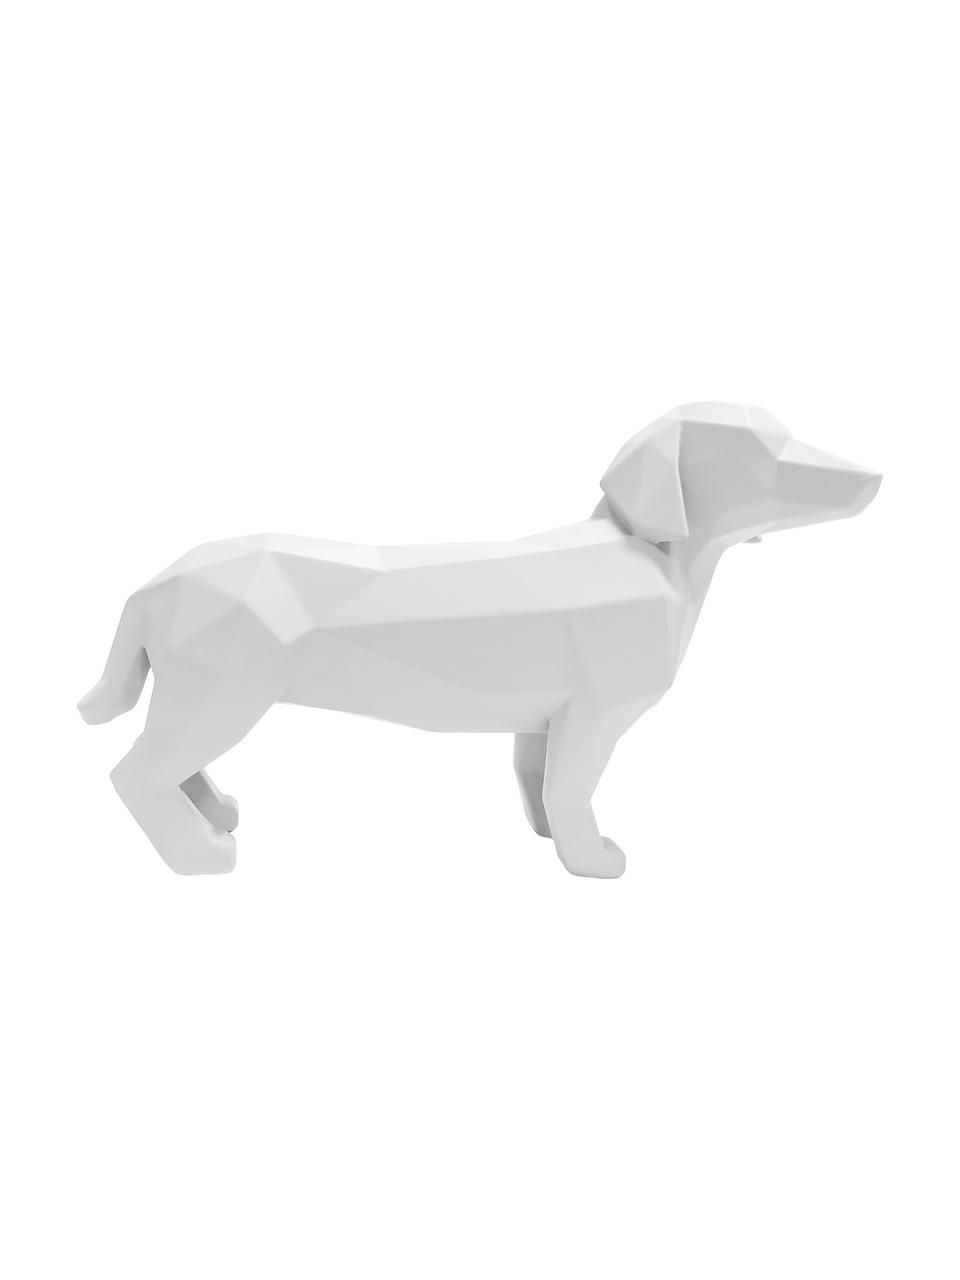 Dekoracja Origami Dog, Tworzywo sztuczne, Biały, S 30 x W 21 cm